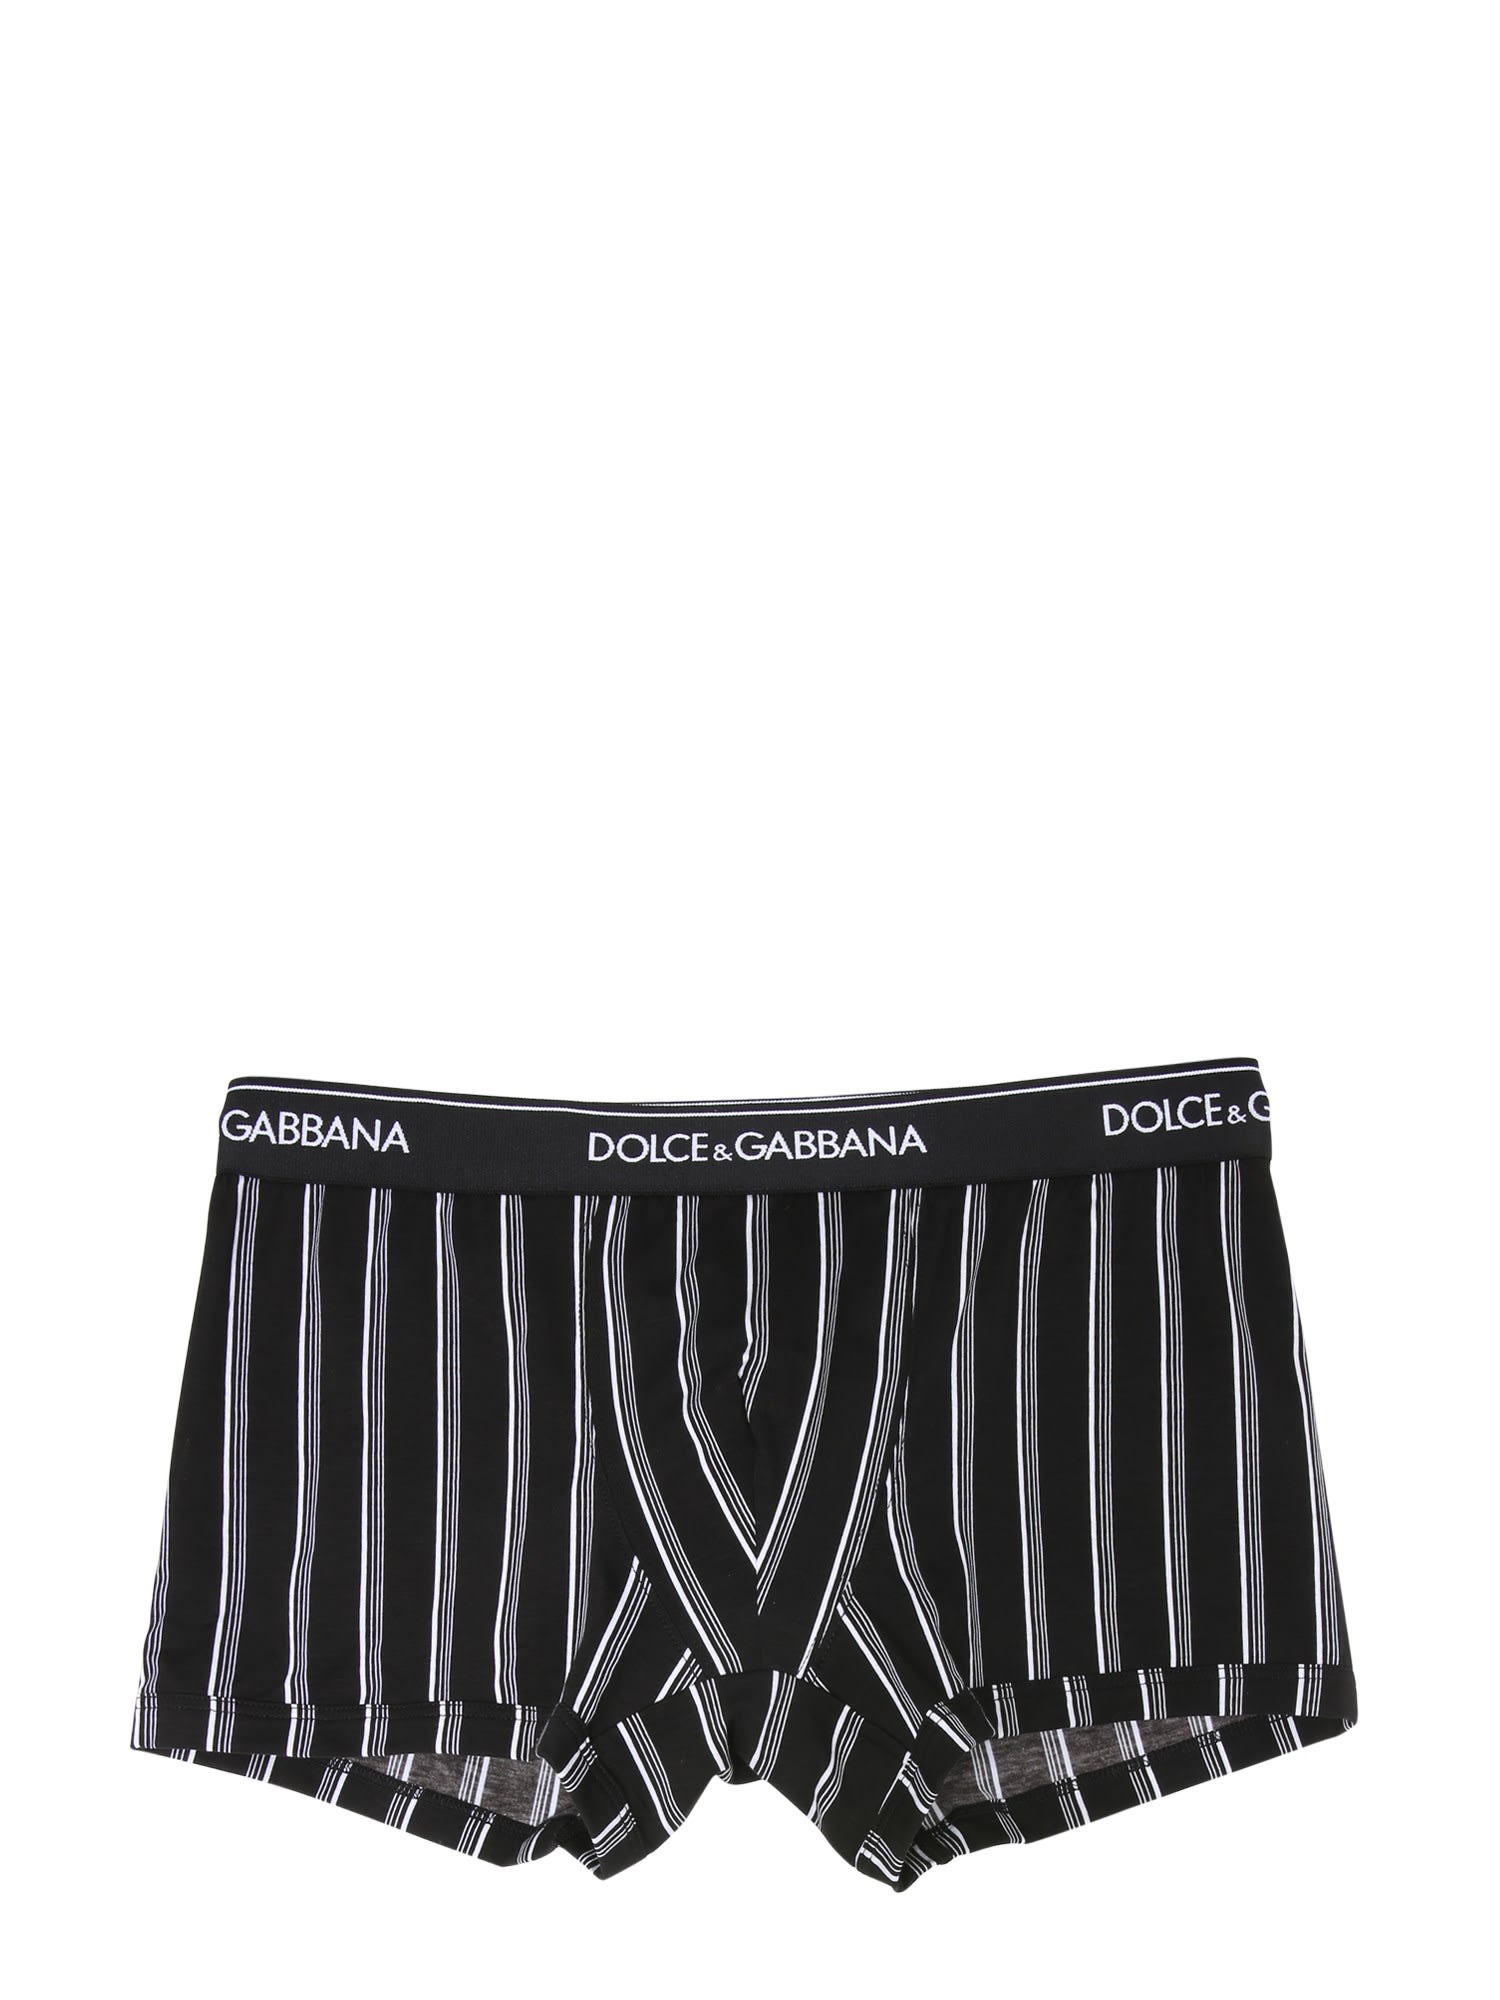 Dolce & Gabbana Striped Print Boxers